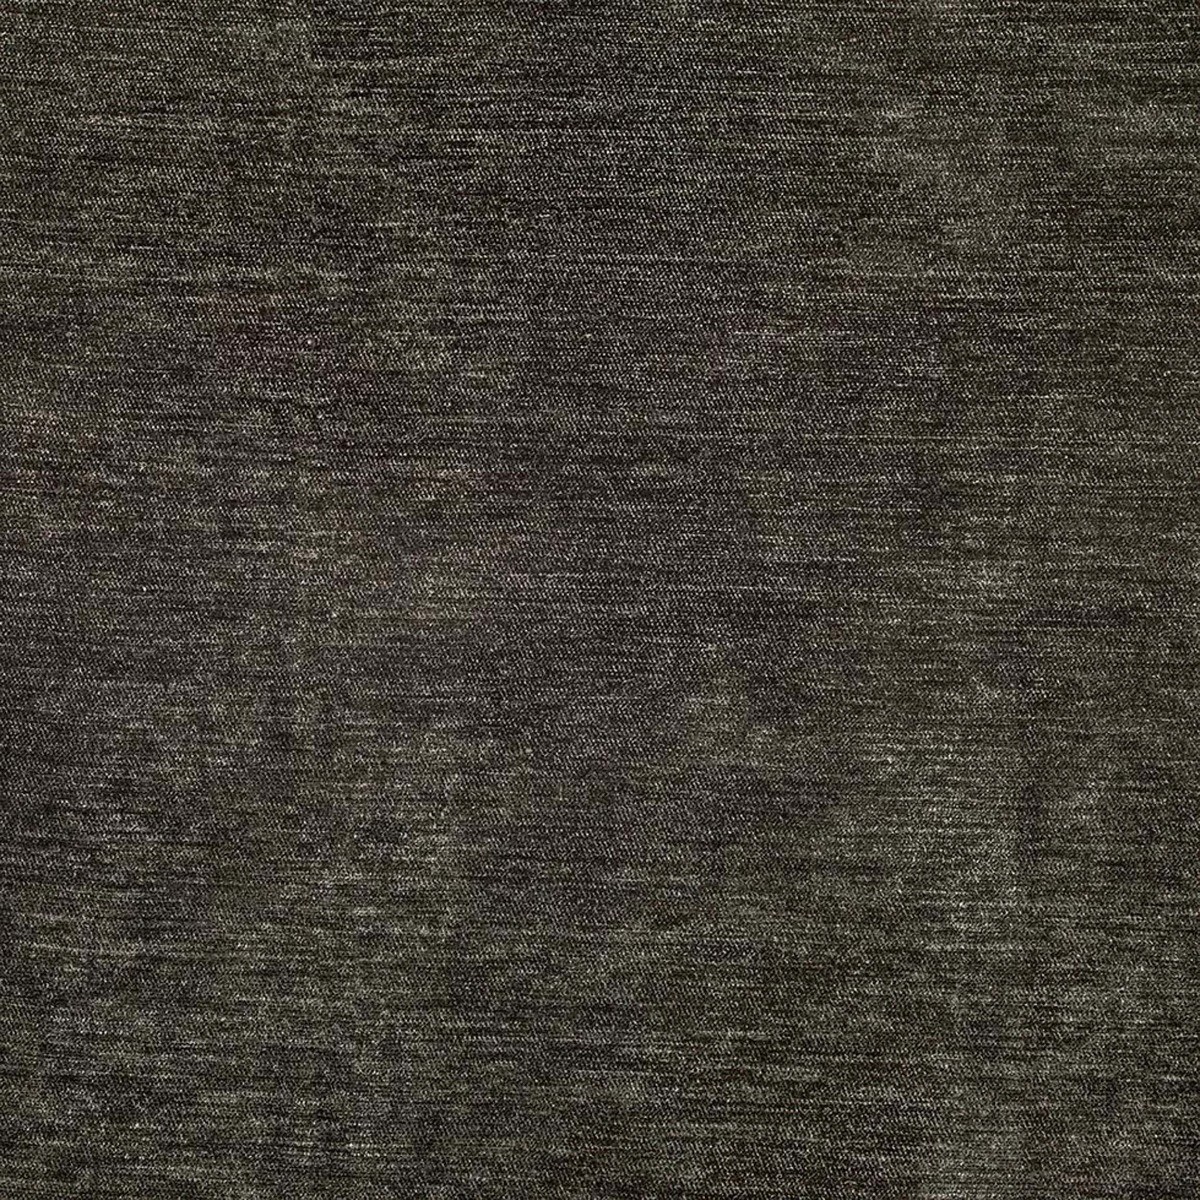  Мебельная ткань EZRA FUMA, ширина 140 см  - Фото